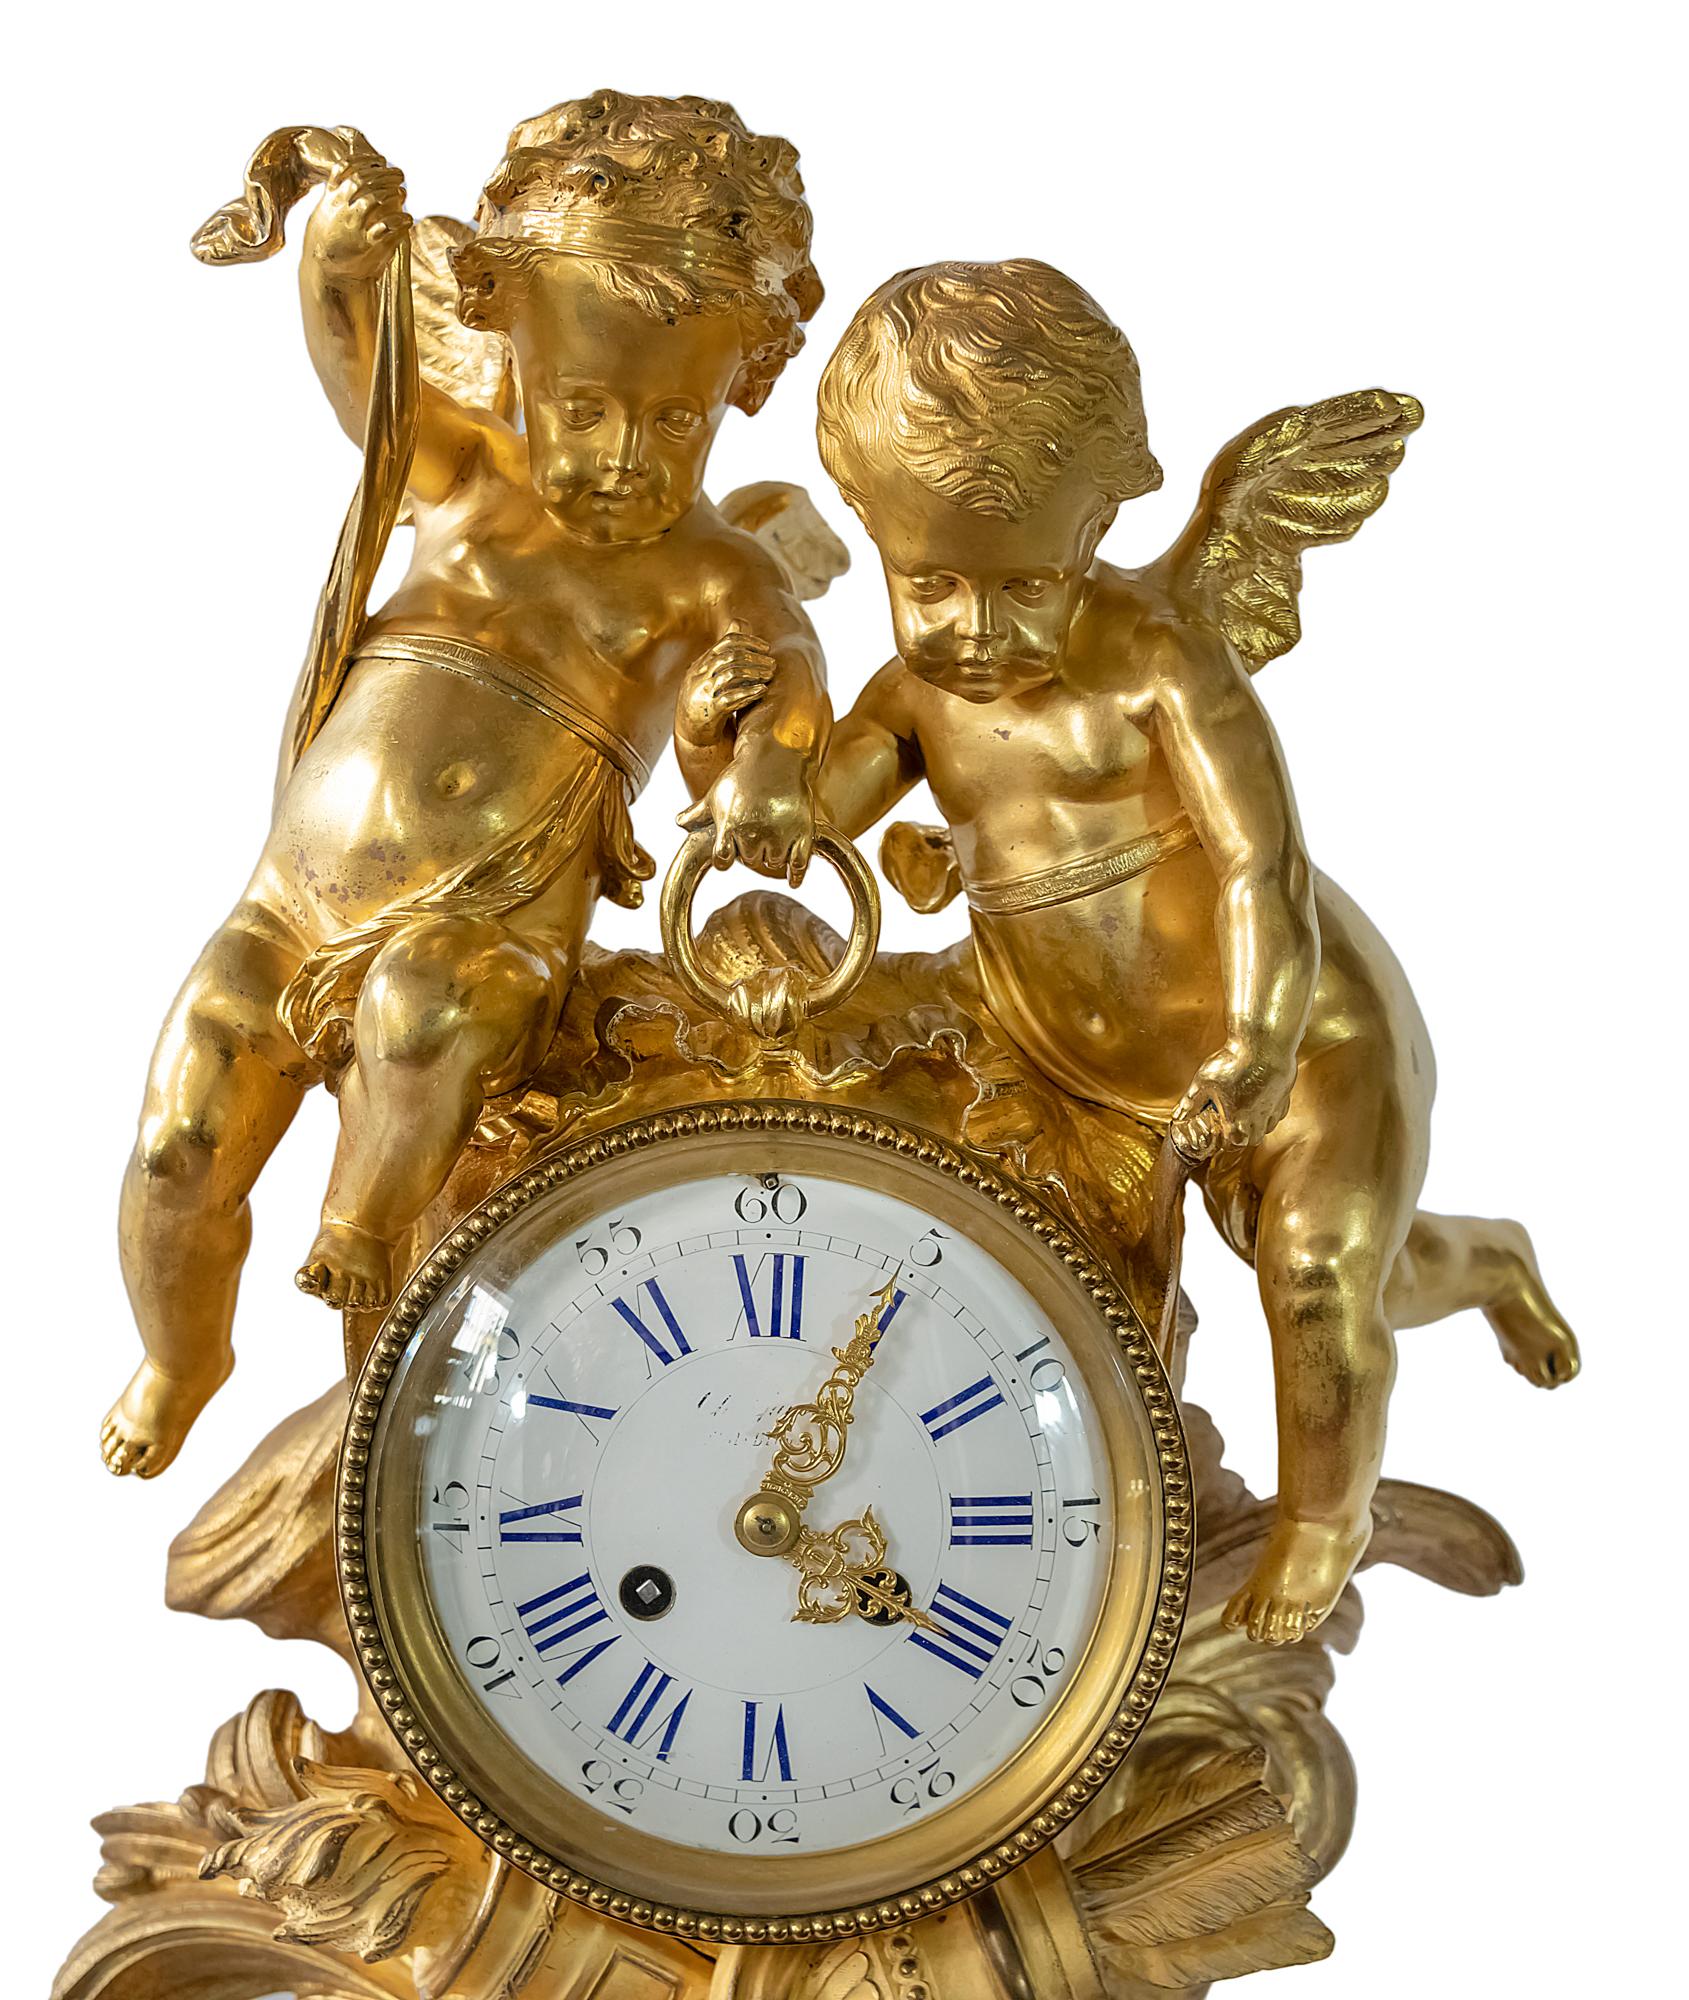 Große antike französische Kaminuhr aus vergoldeter Bronze aus dem 19. Jahrhundert, die mit zwei Engeln verziert ist, die das Zifferblatt halten.
Die Emailziffern sind in kobaltblauer Farbe von Hand bemalt.
Im Inneren des Uhrwerks signiert und